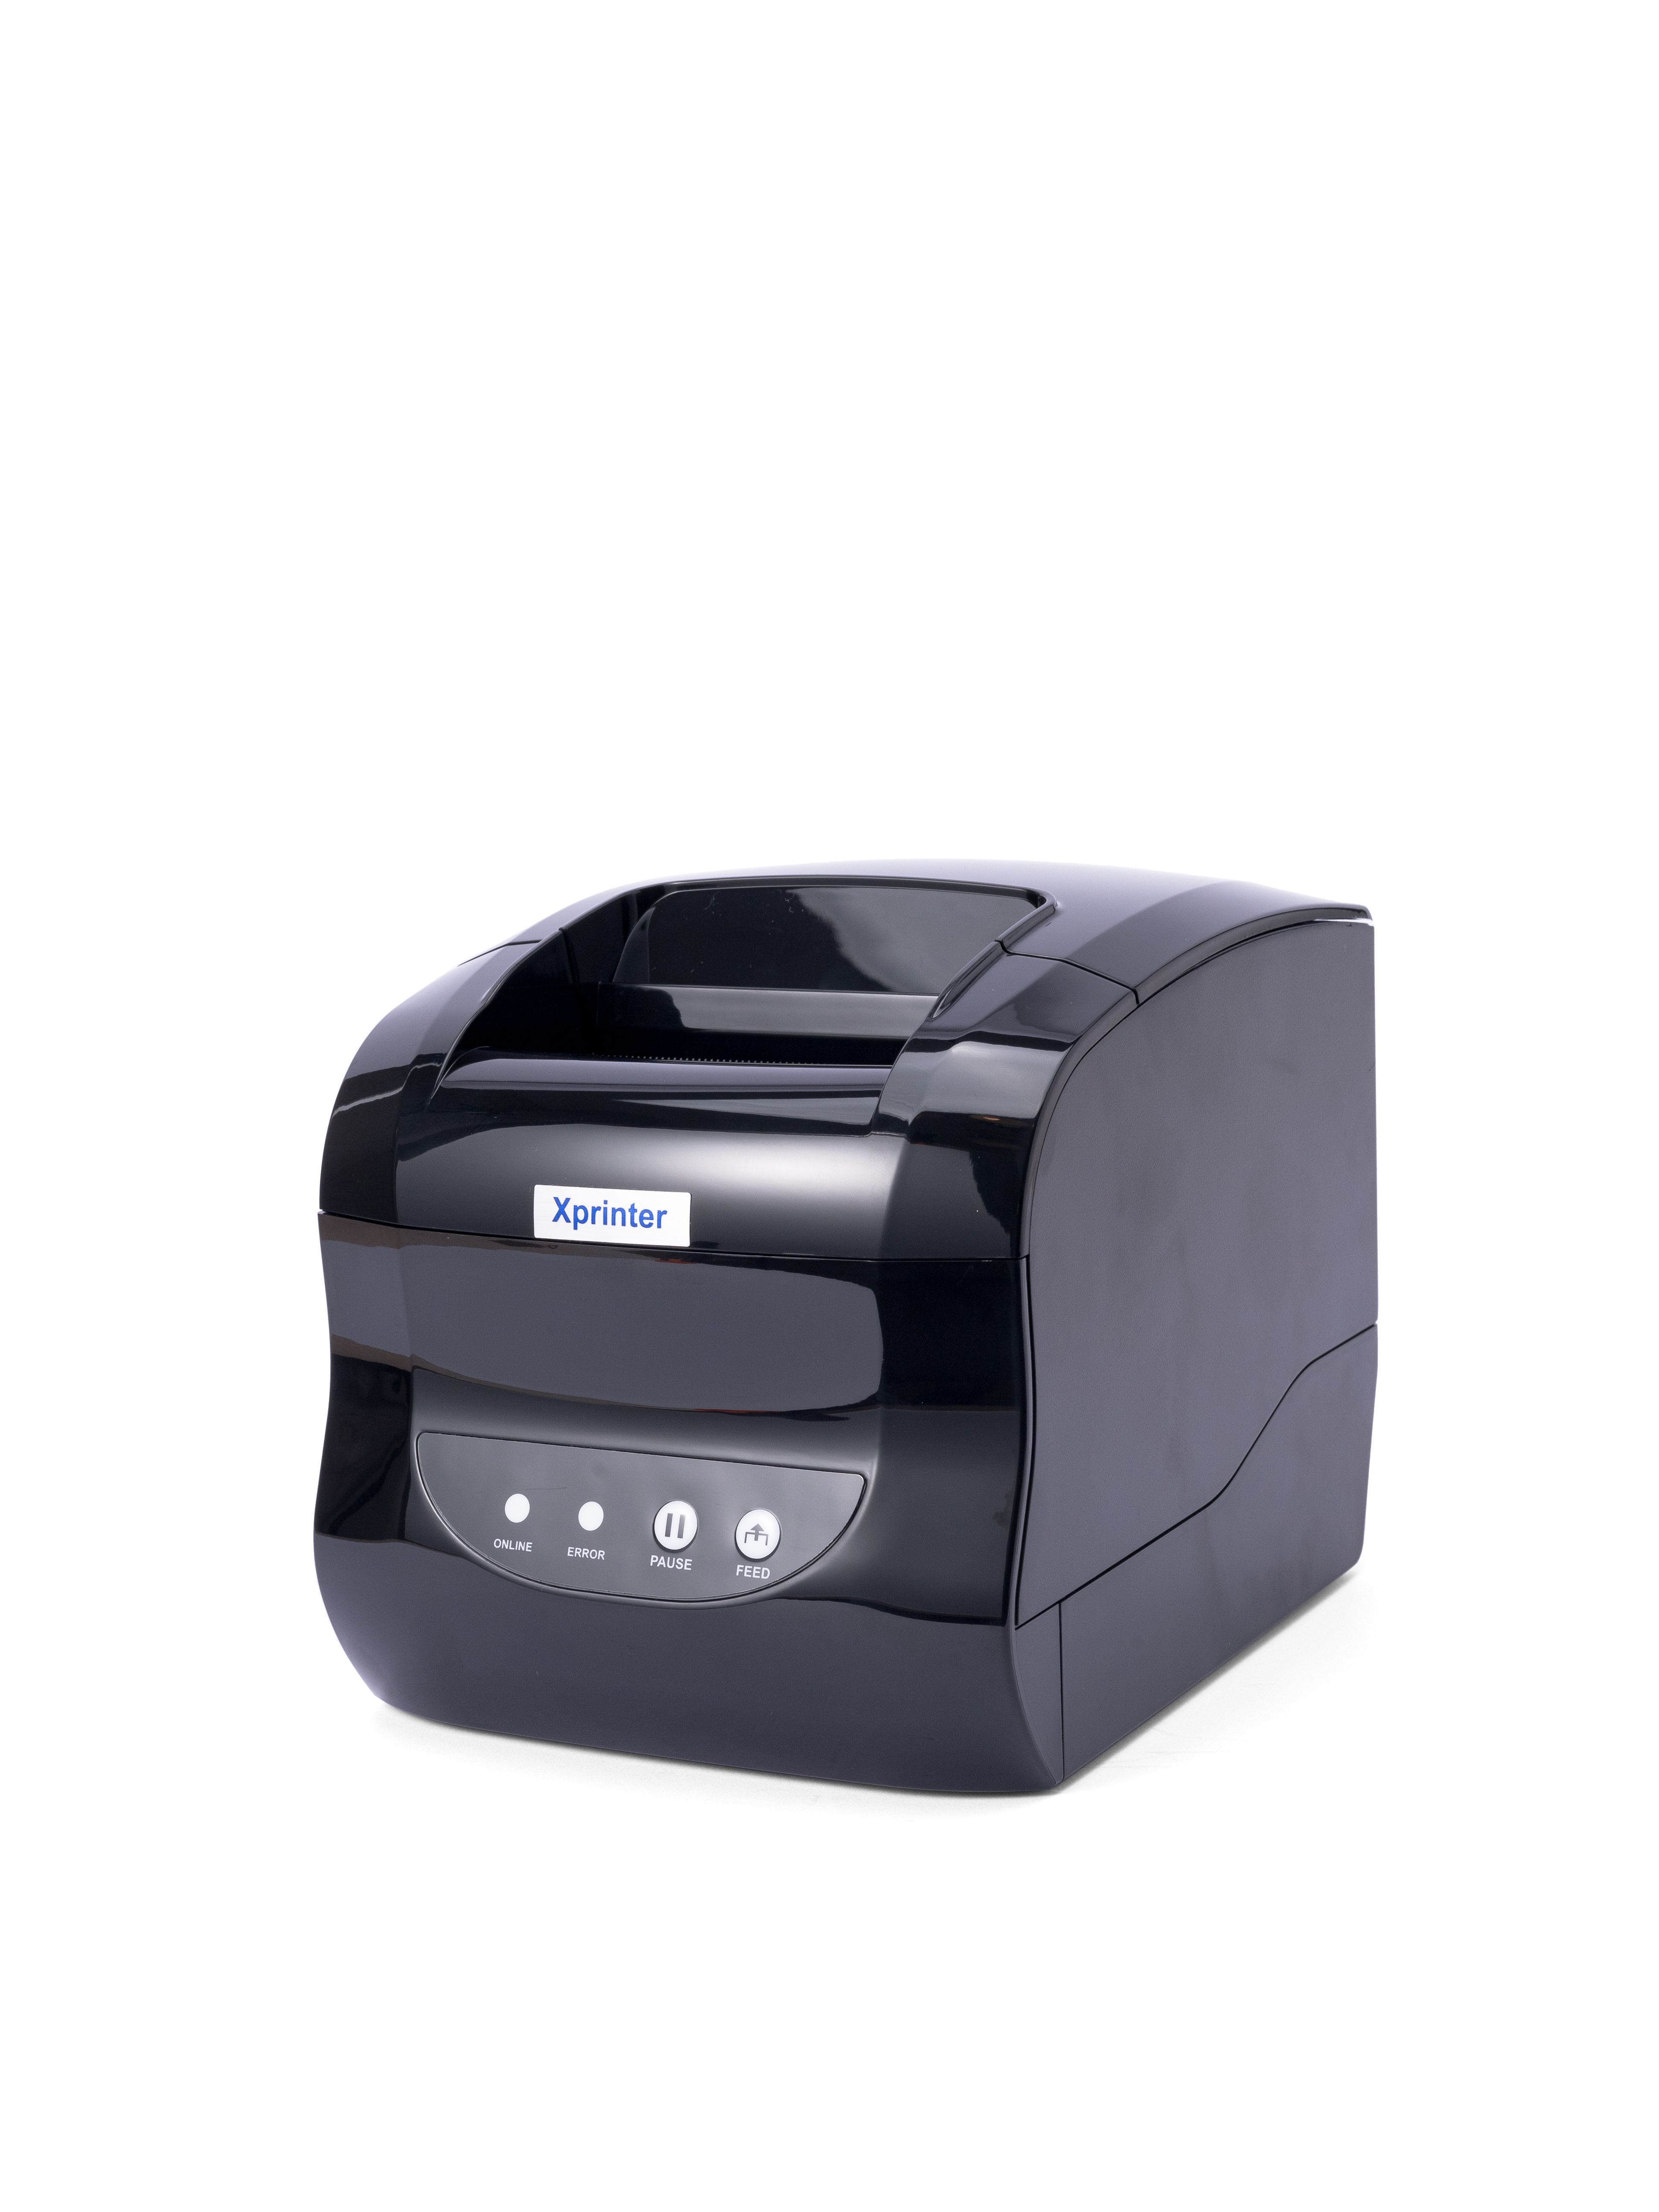 365b xprinter как печатать. Принтер Xprinter 365b. Термопринтер Xprinter XP-365b печать. Наклейки для принтера Xprinter 365b. Термопринтер этикеток для маркетплейсов Xprinter 370.